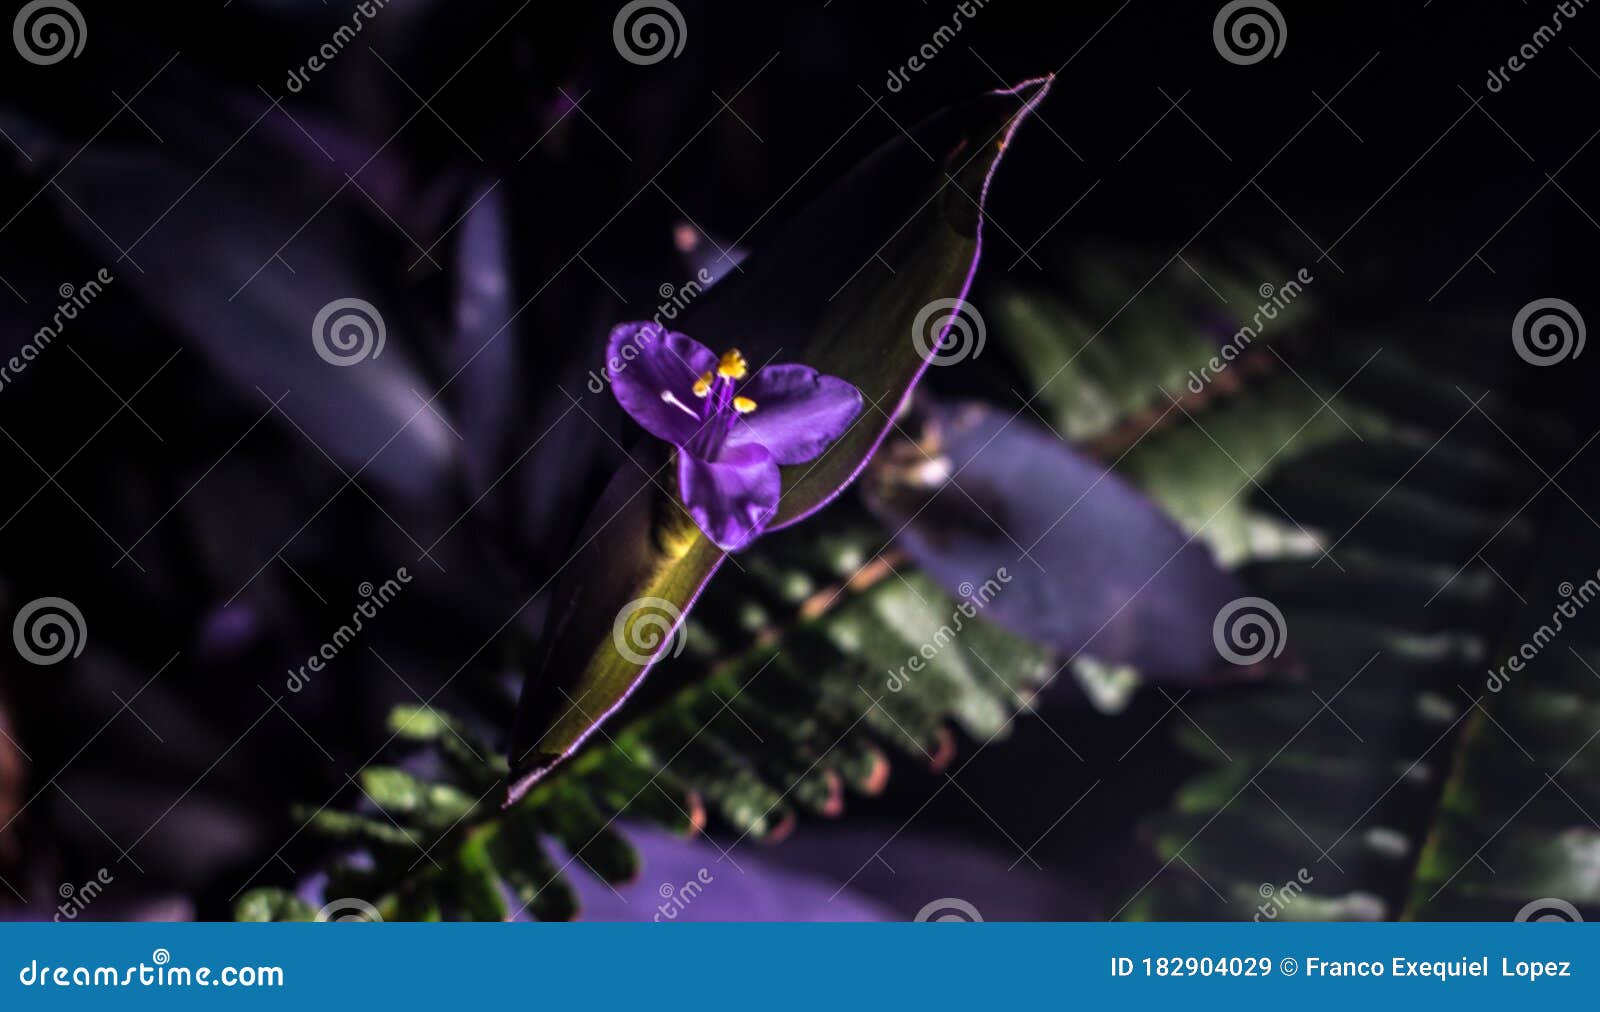 flower viollet violetas